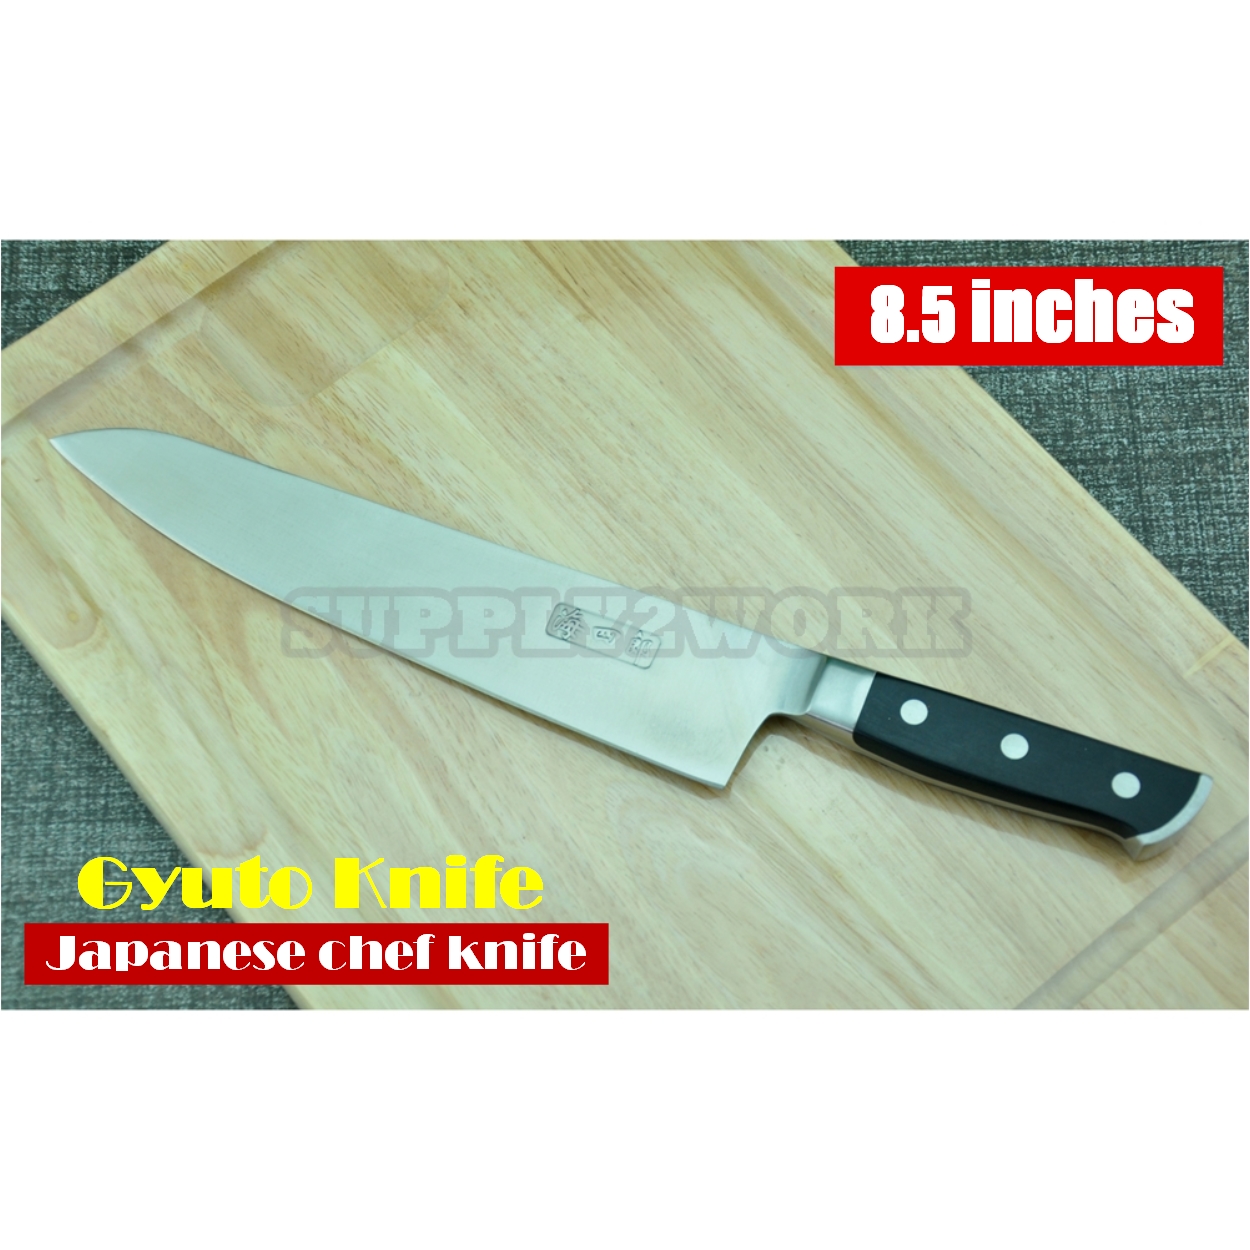 CHIN1 Chef Knife มีดเชฟญี่ปุ่น มีดกิวโต (Gyuto knife) มีดครัว ใบมีดสแตนเลส ขนาดใบมีด 8.5 นิ้ว